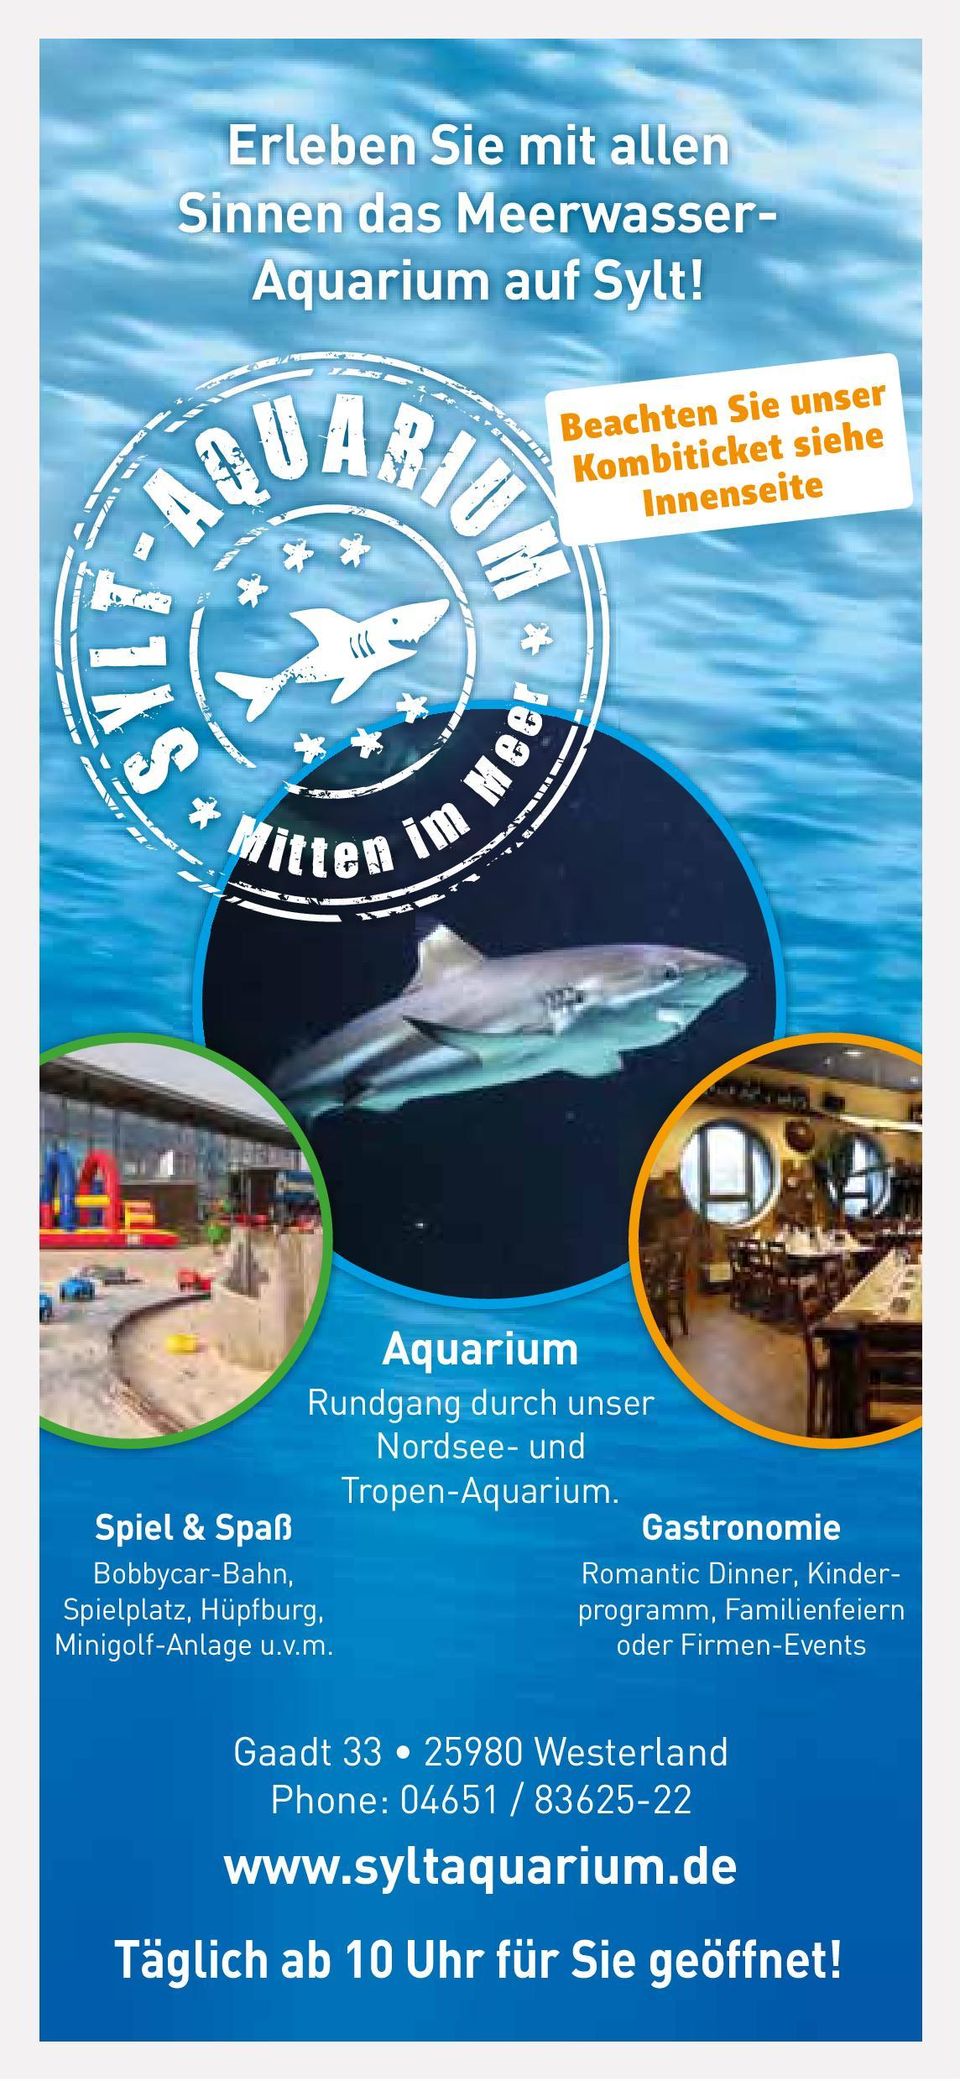 Minigolf-Anlage u.v.m. Aquarium Rundgang durch unser Nordsee- und Tropen-Aquarium.